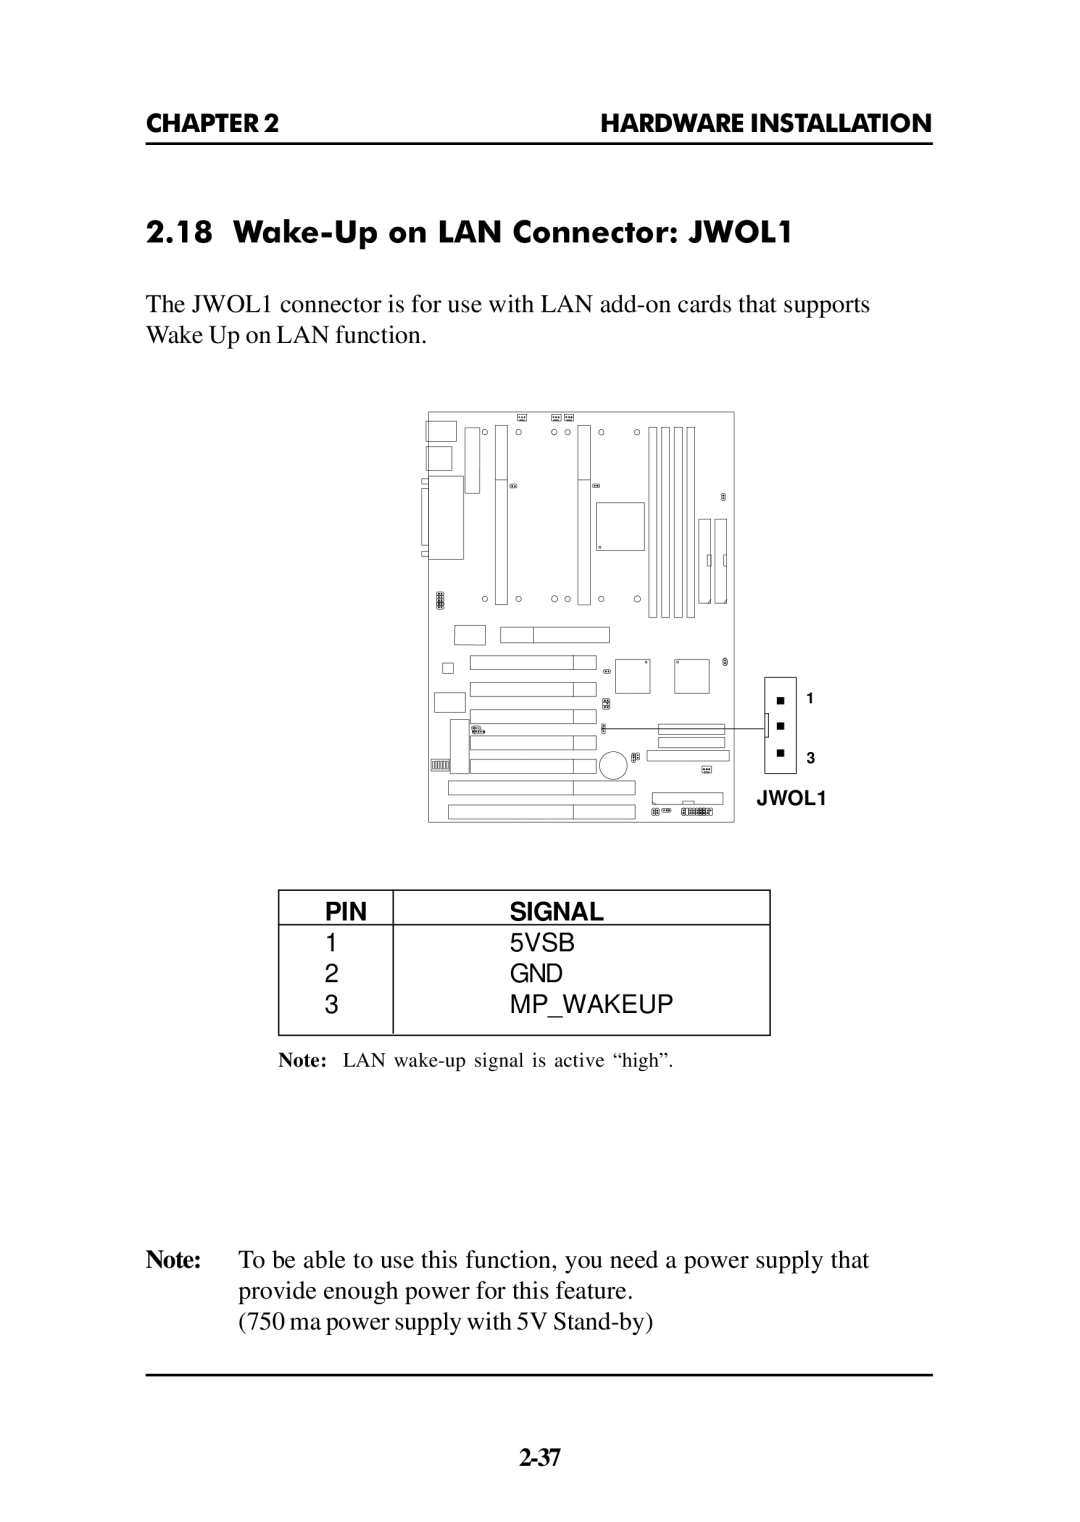 Intel ATX BX2 manual Wake-Up on LAN Connector JWOL1 